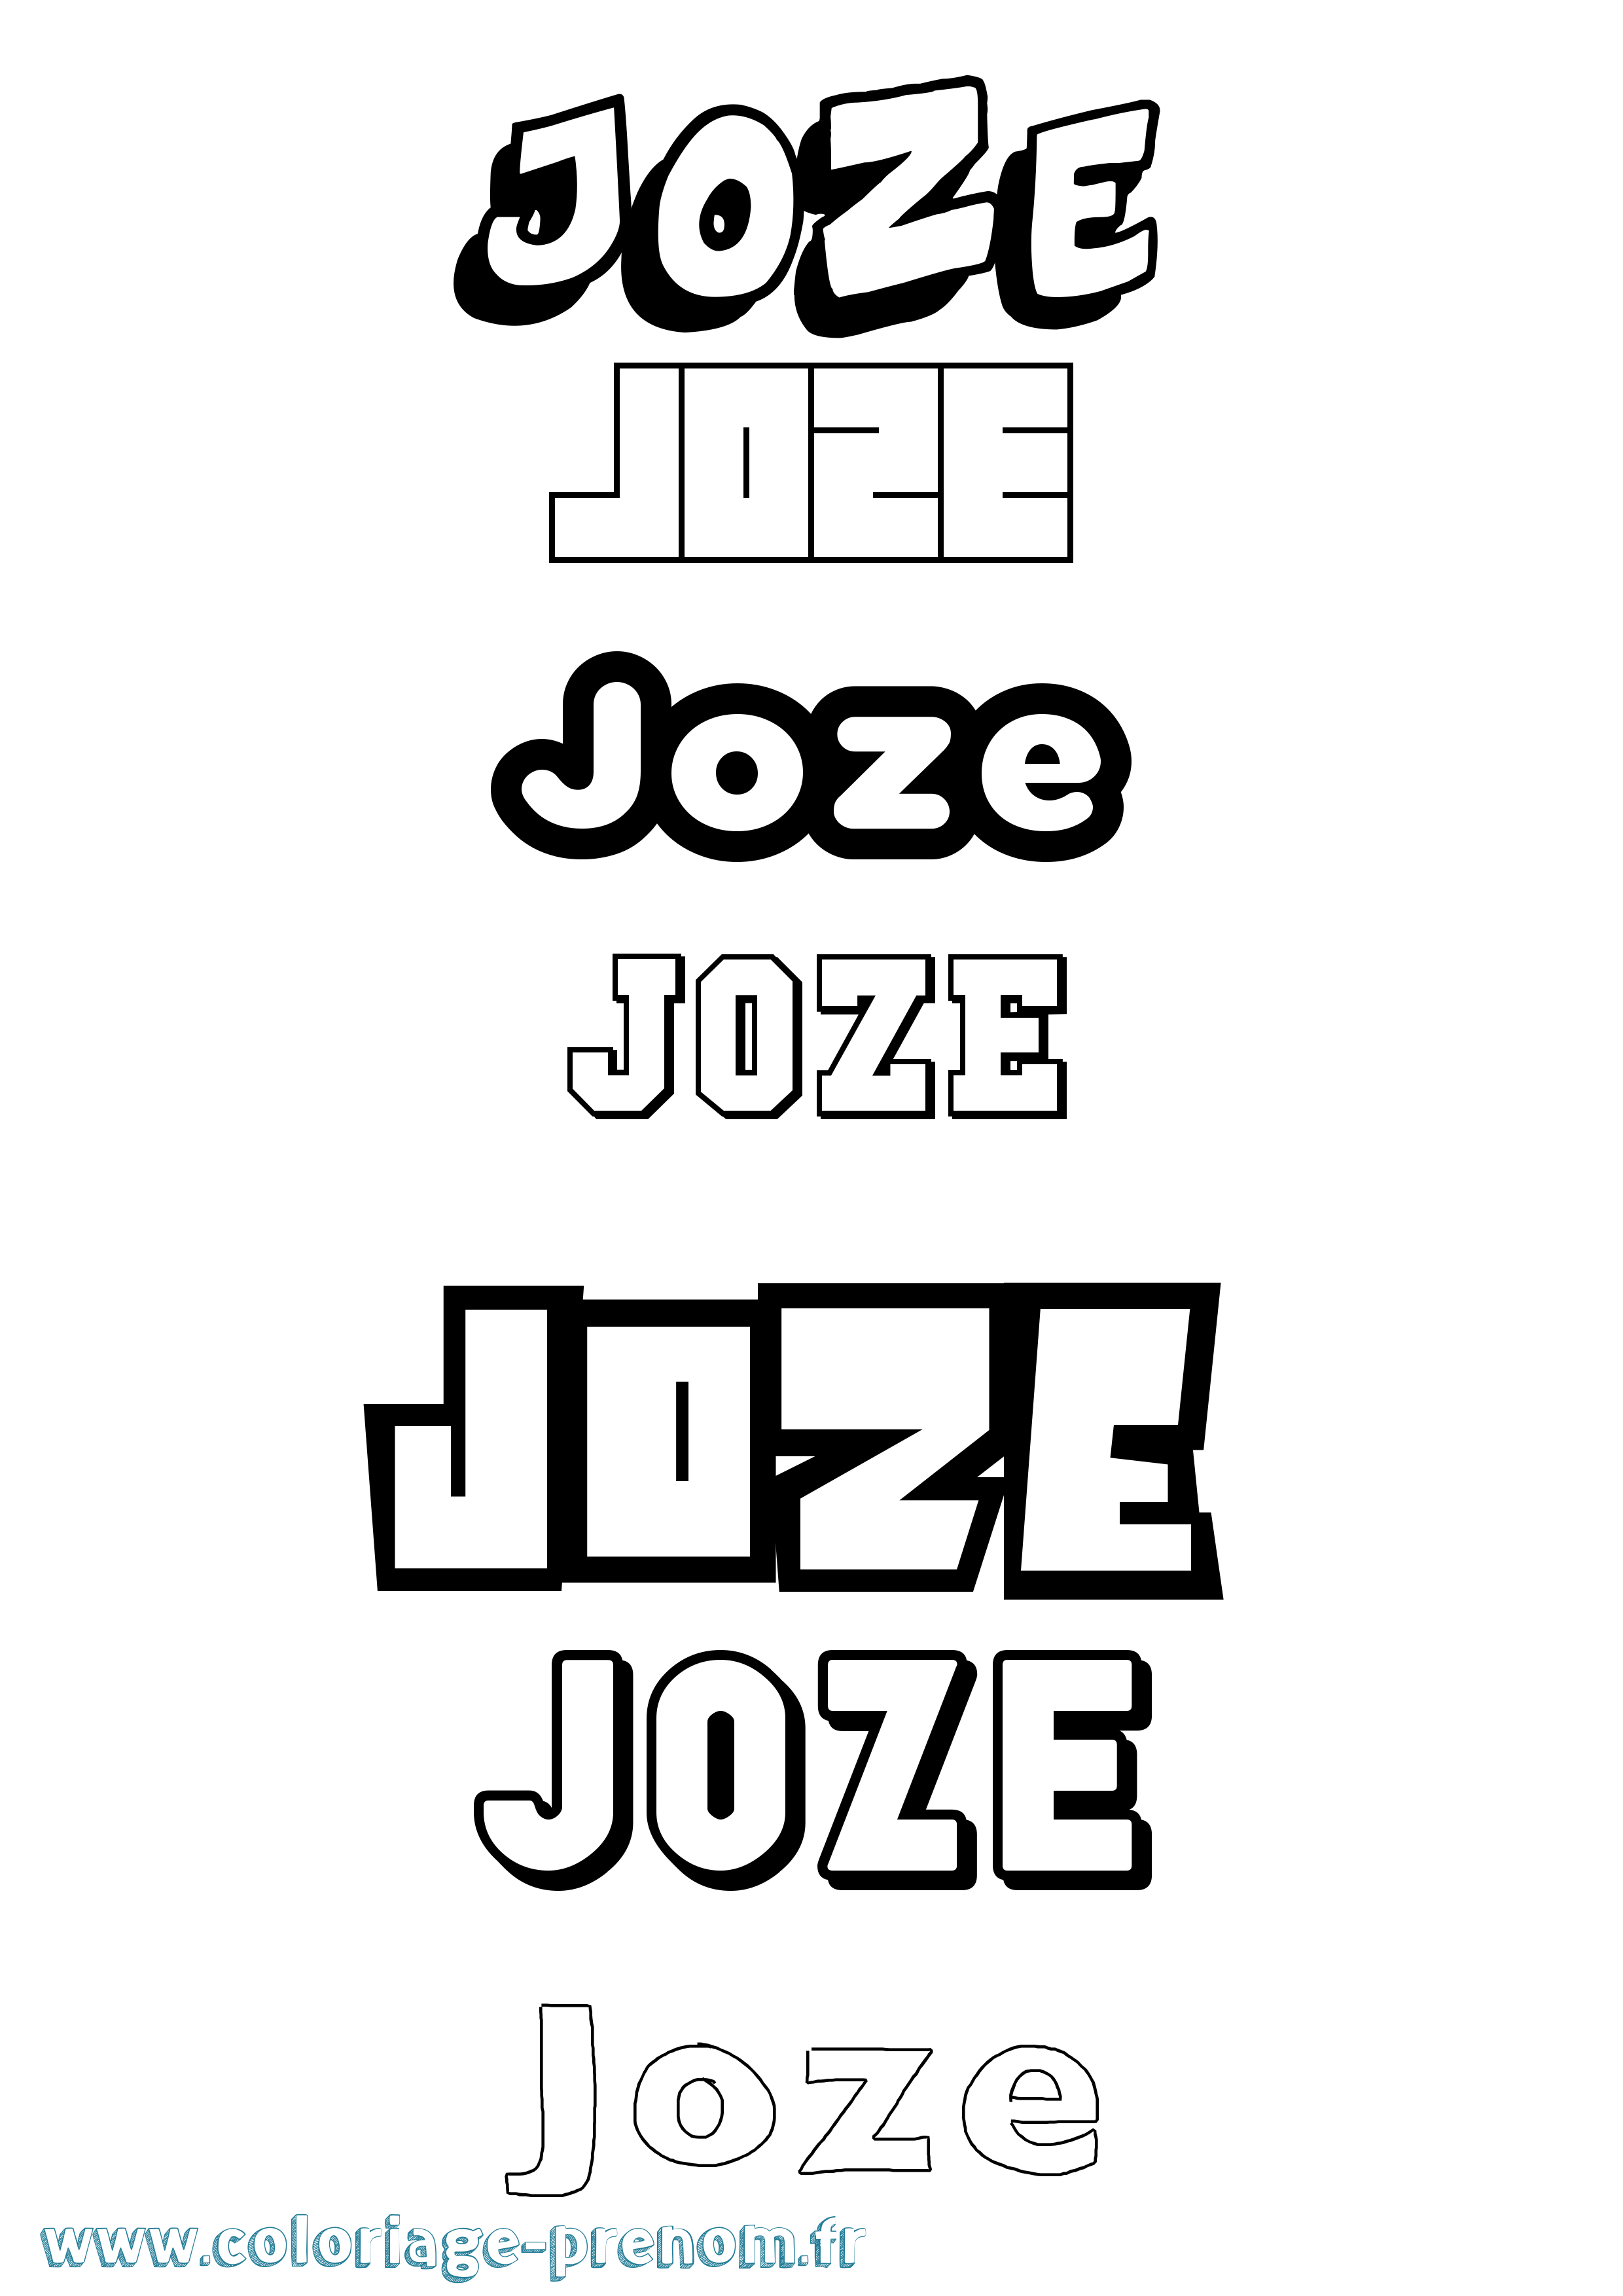 Coloriage prénom Joze Simple